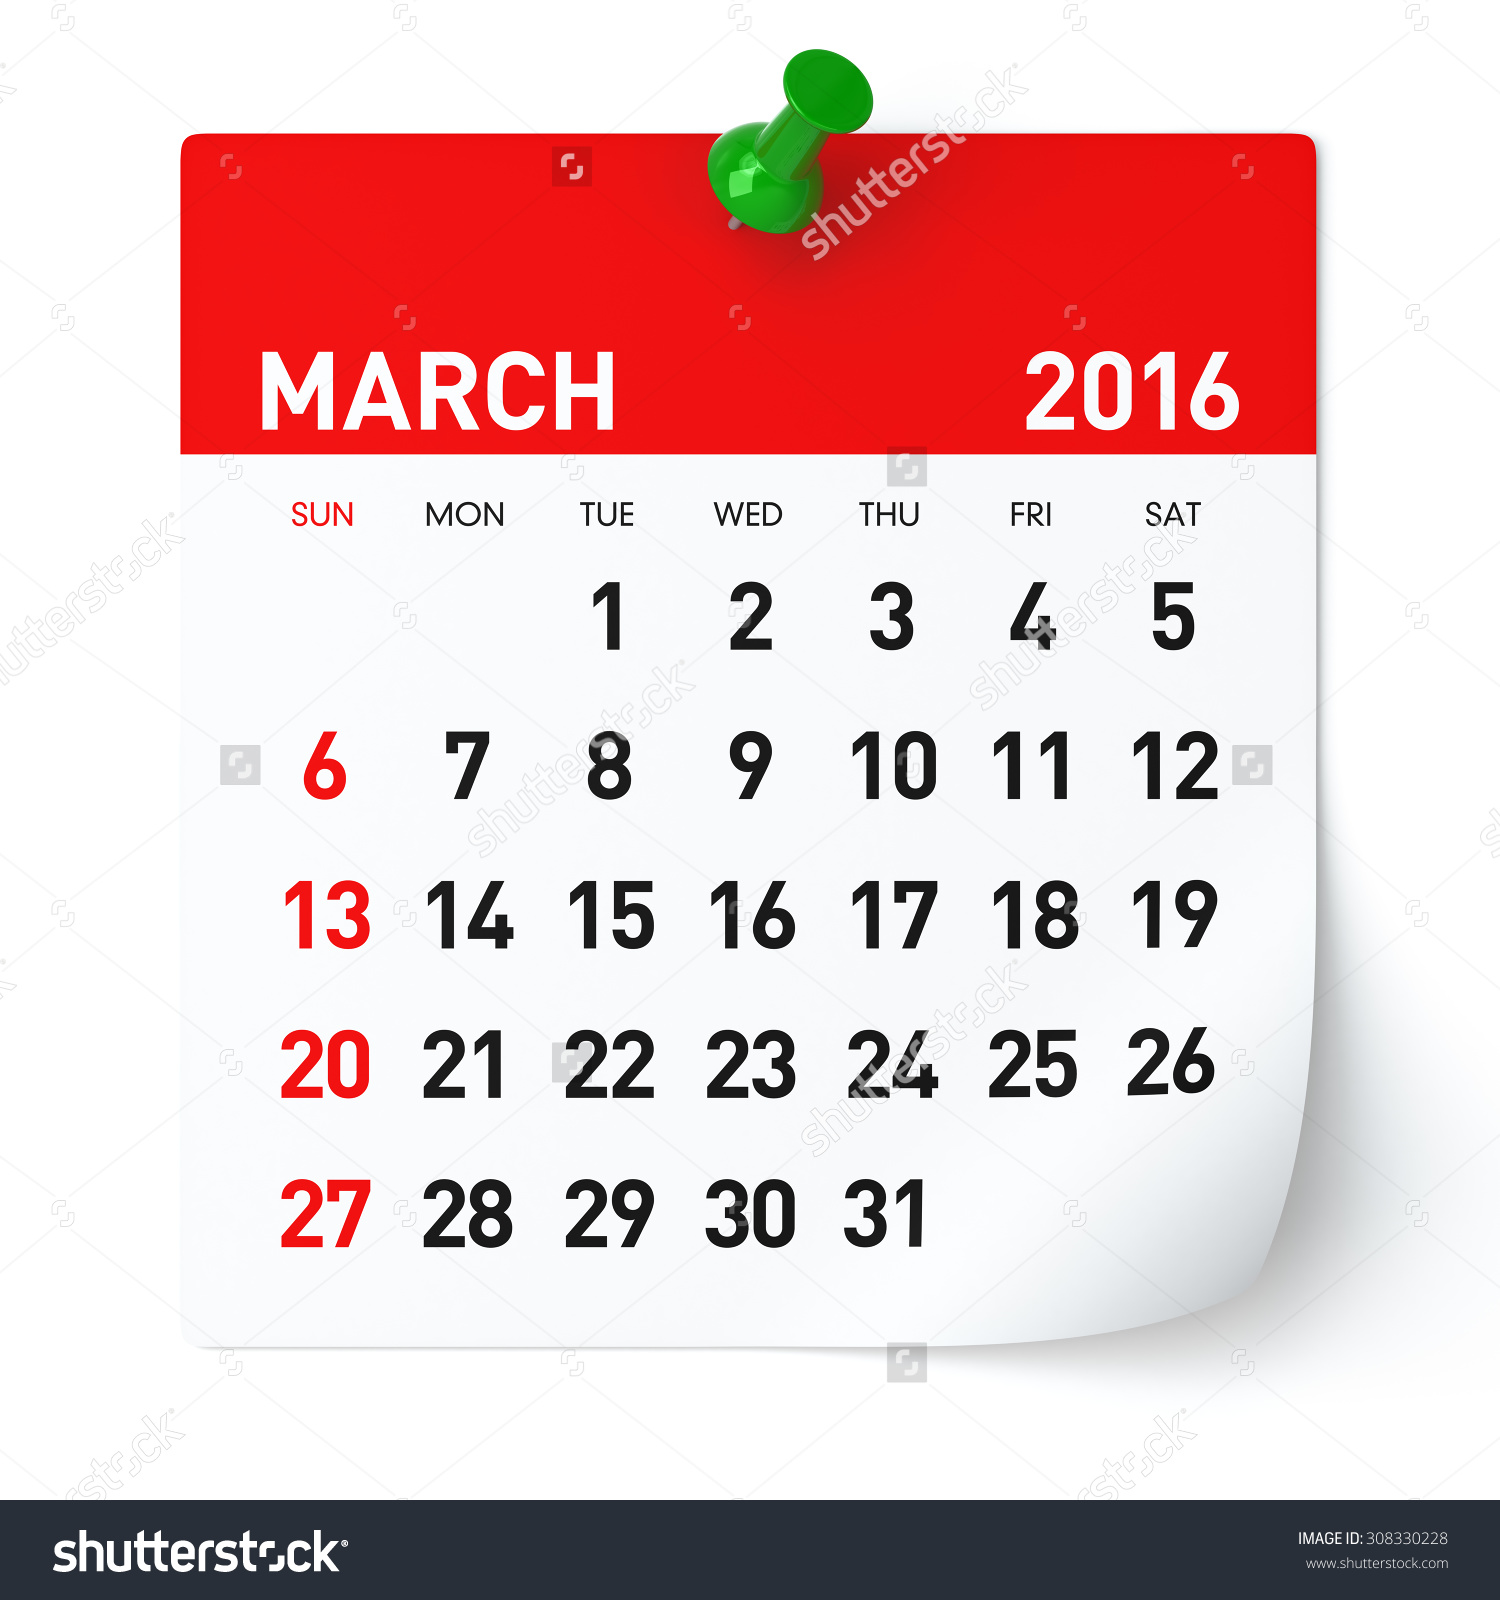 March 2016 calendar clipart.